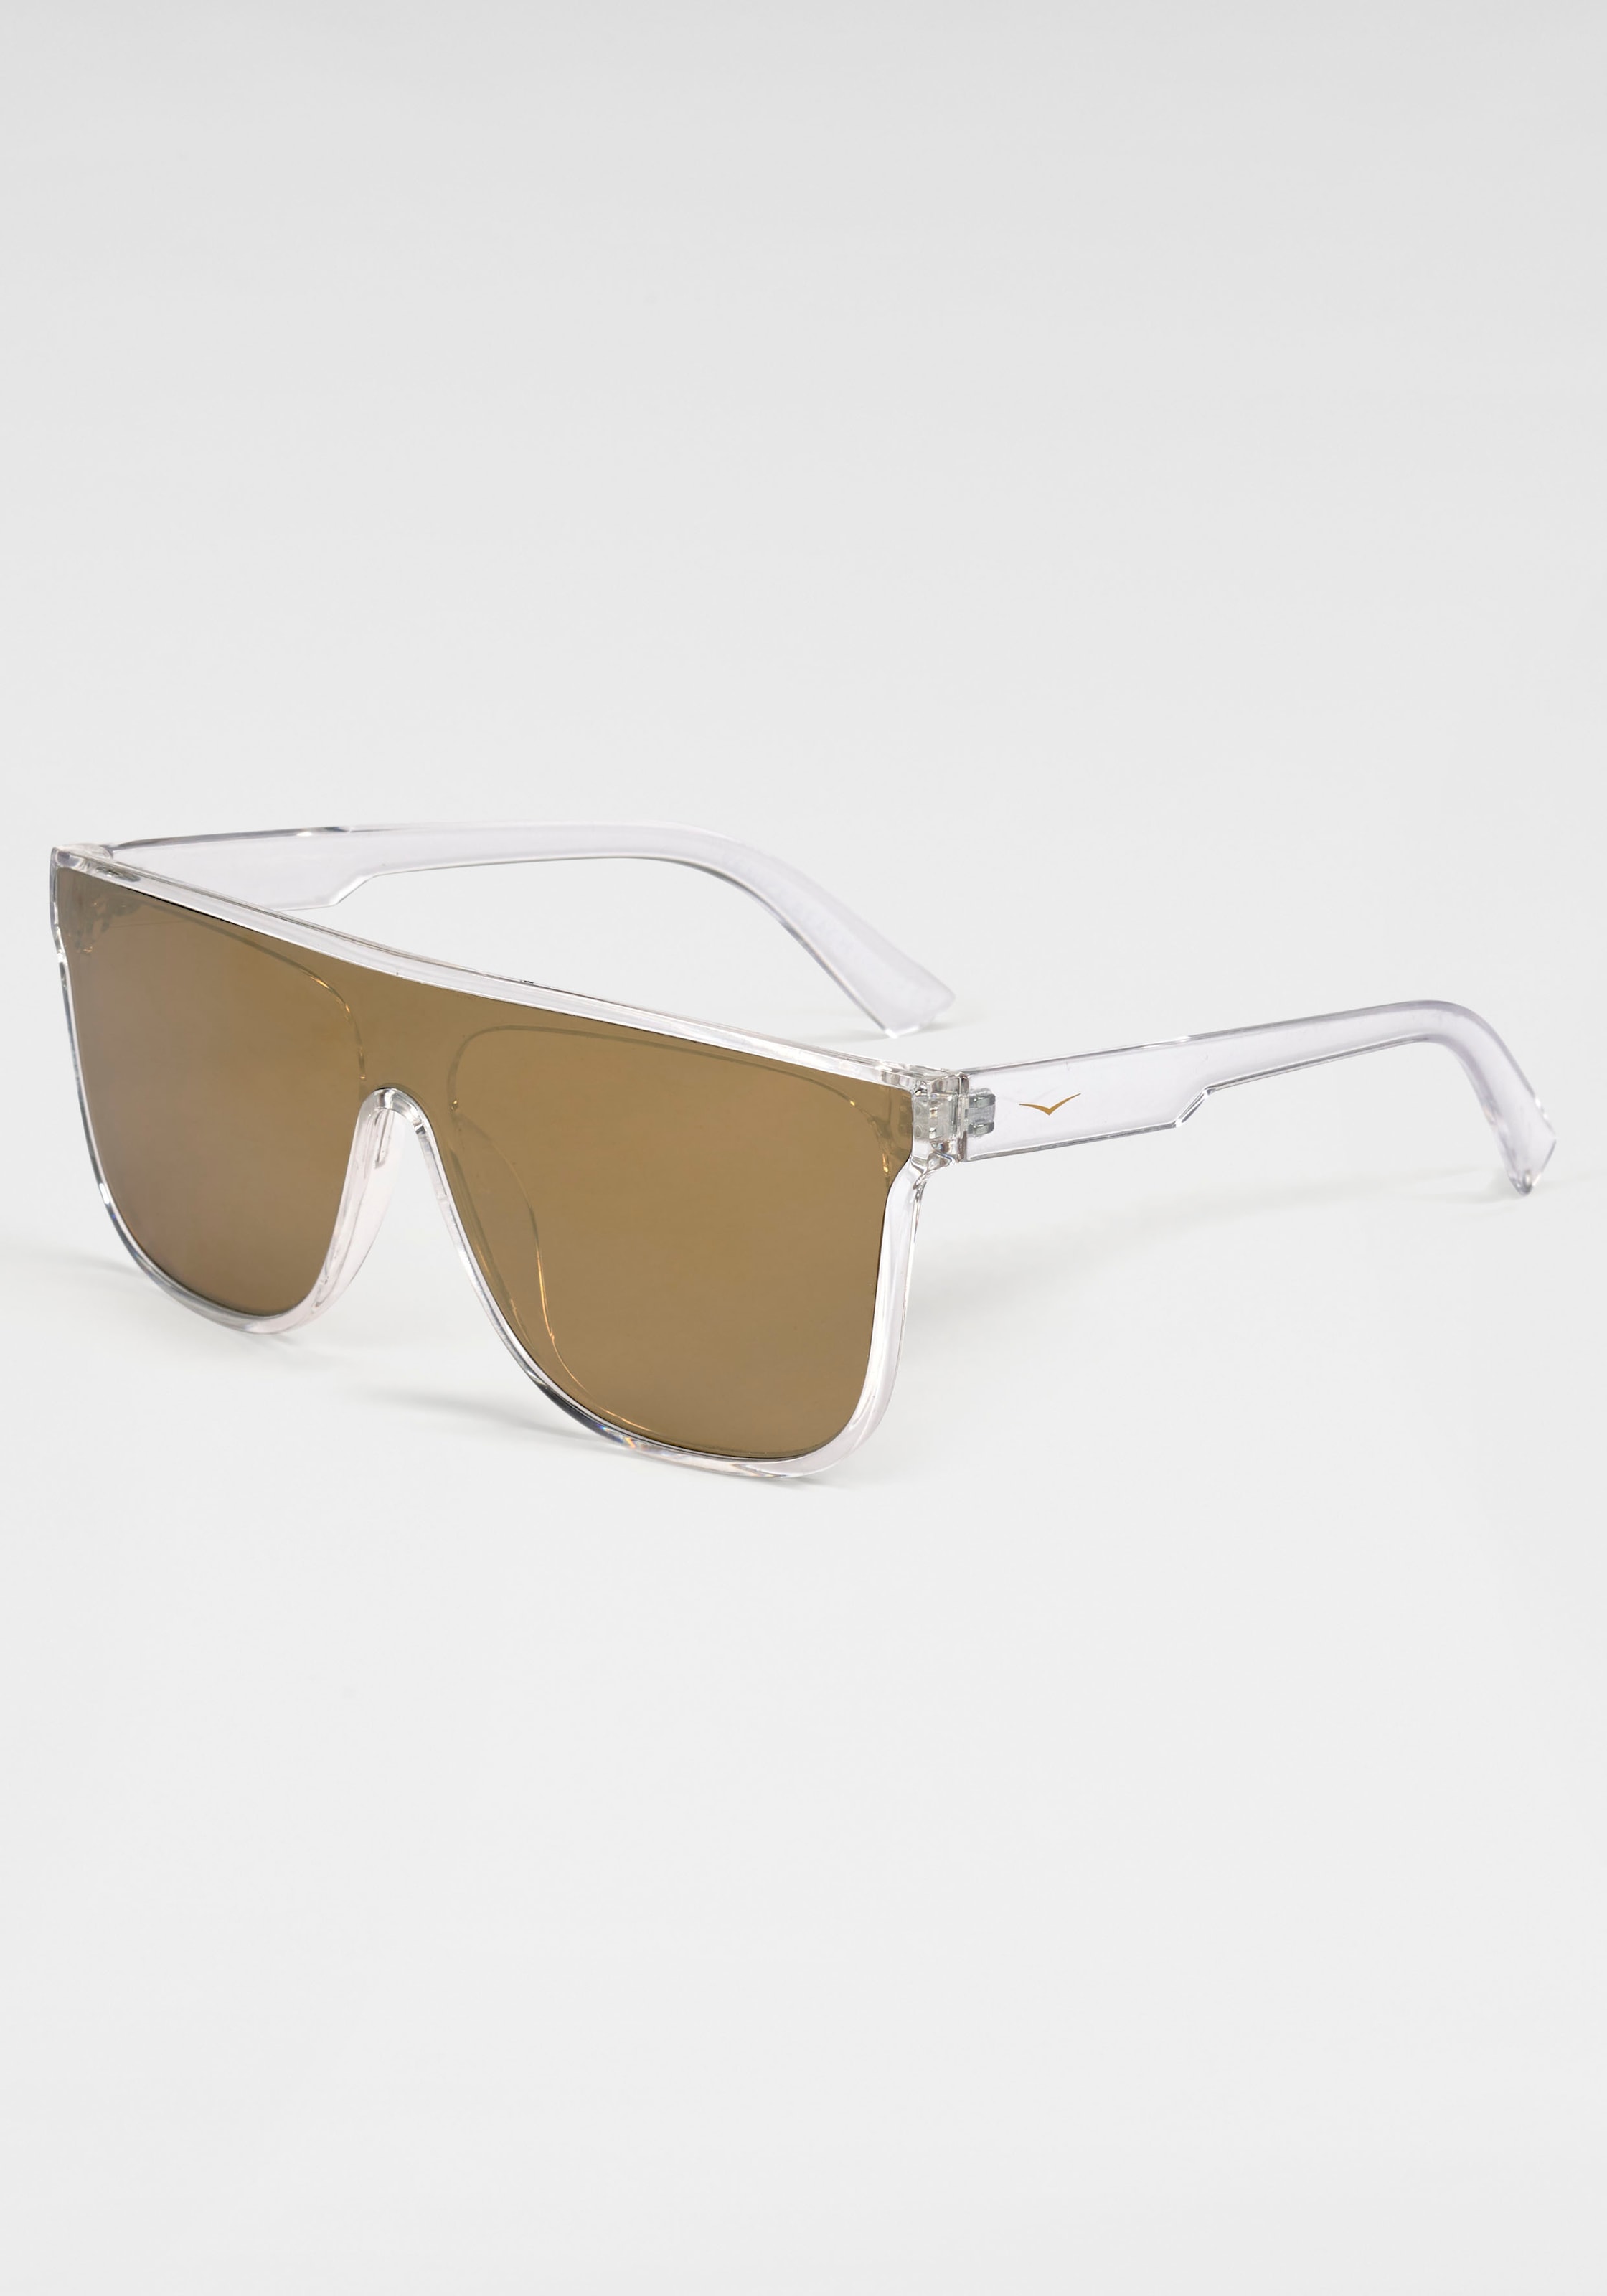 Sonnenbrille, Einscheibensonnenbrille aus Kunststoff